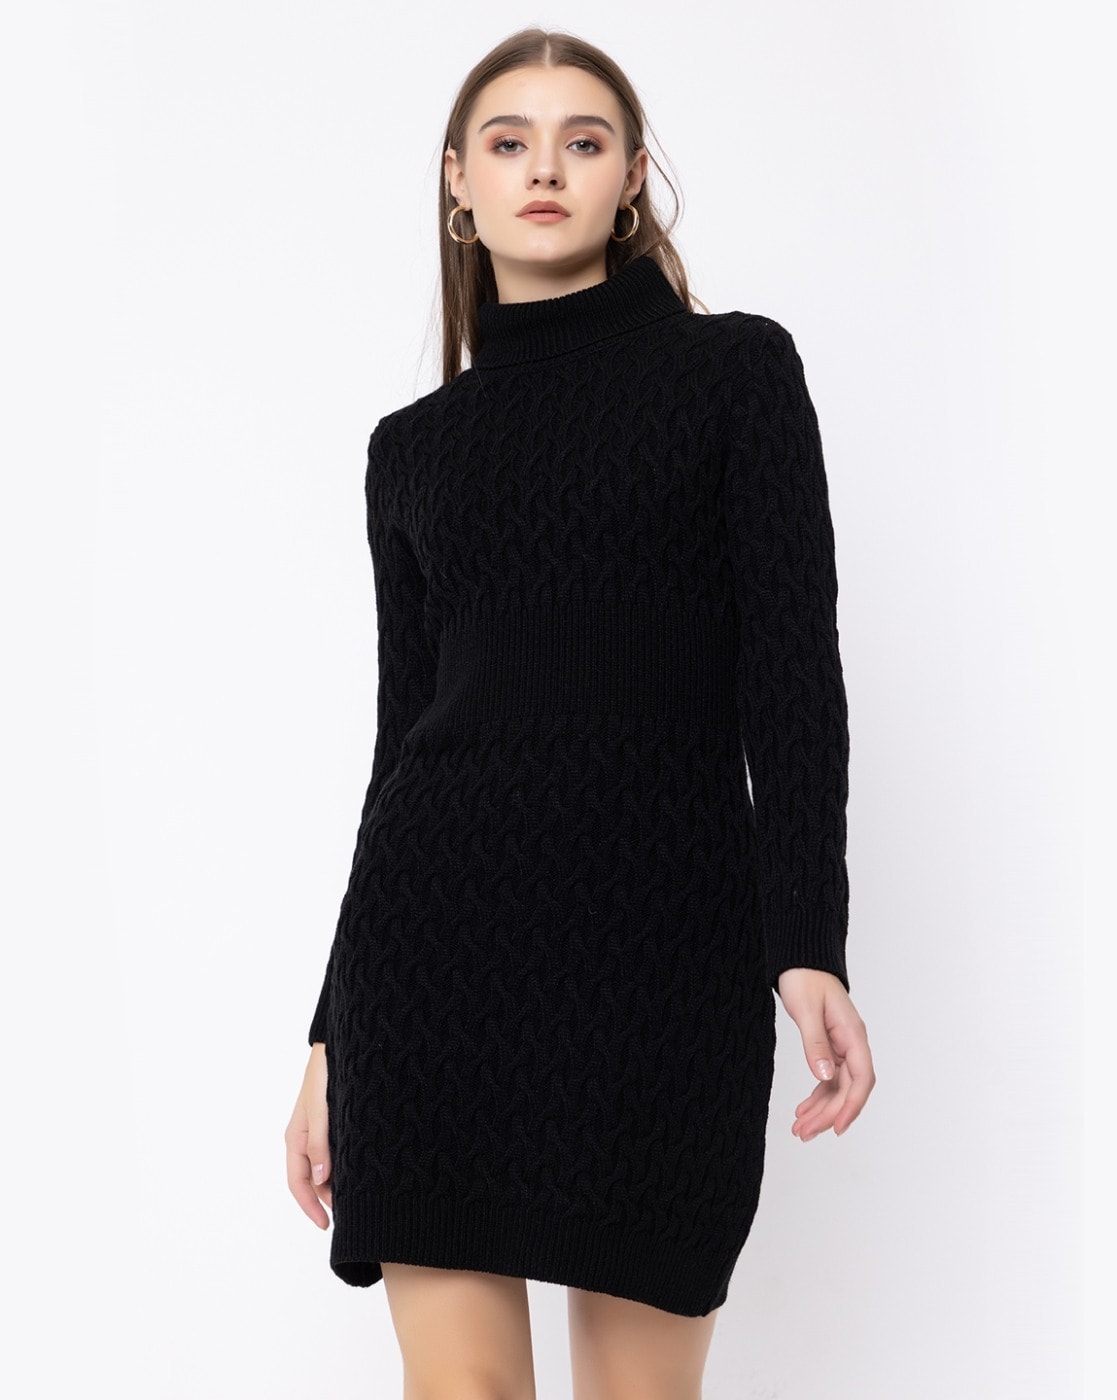 Long Sweater Dresses - Buy Long Sweater Dresses online in India